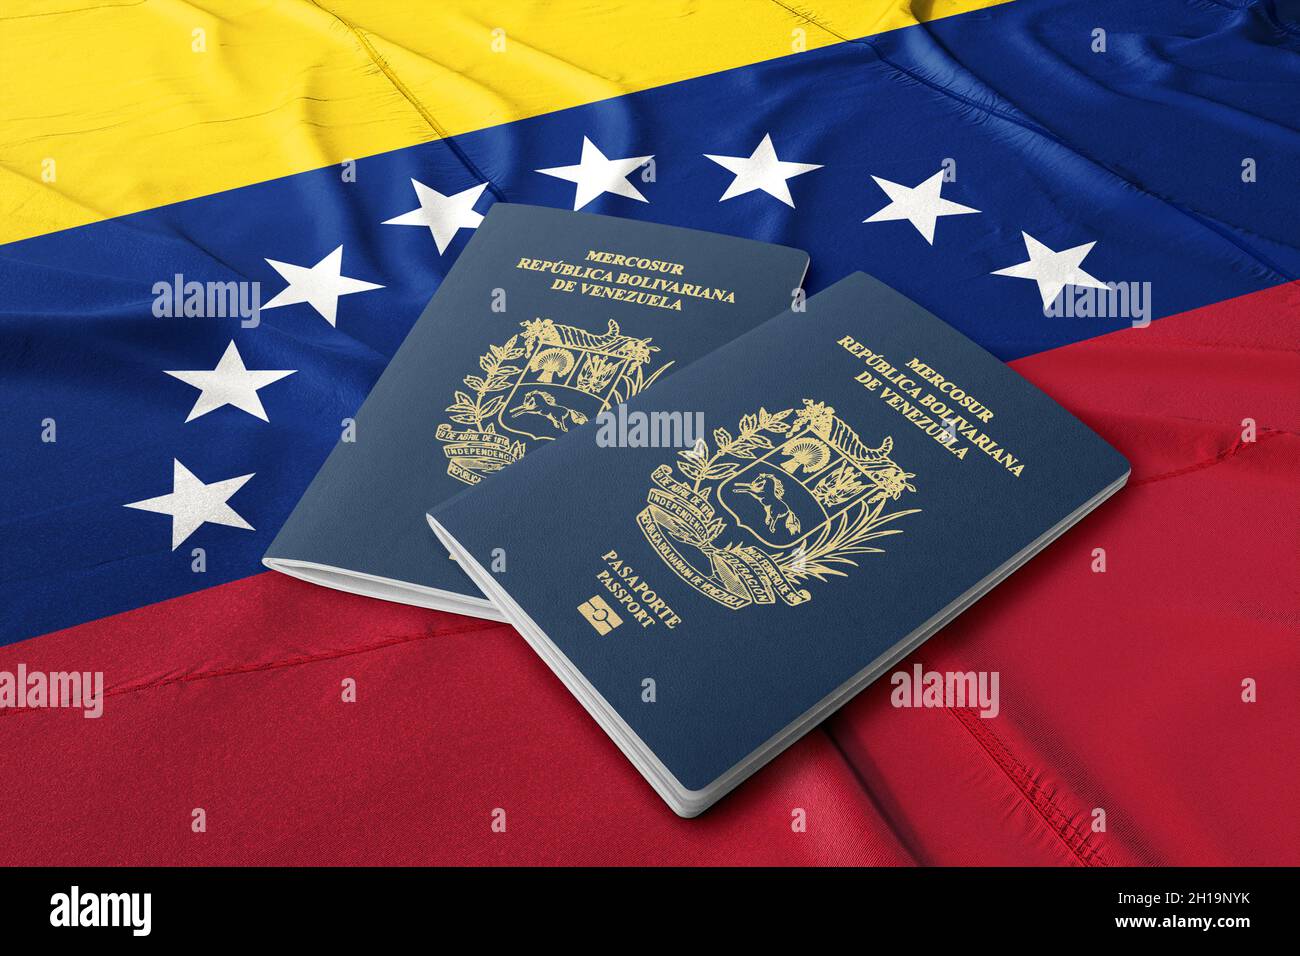 Venezuela passport with the flag of Venezuela Stock Photo